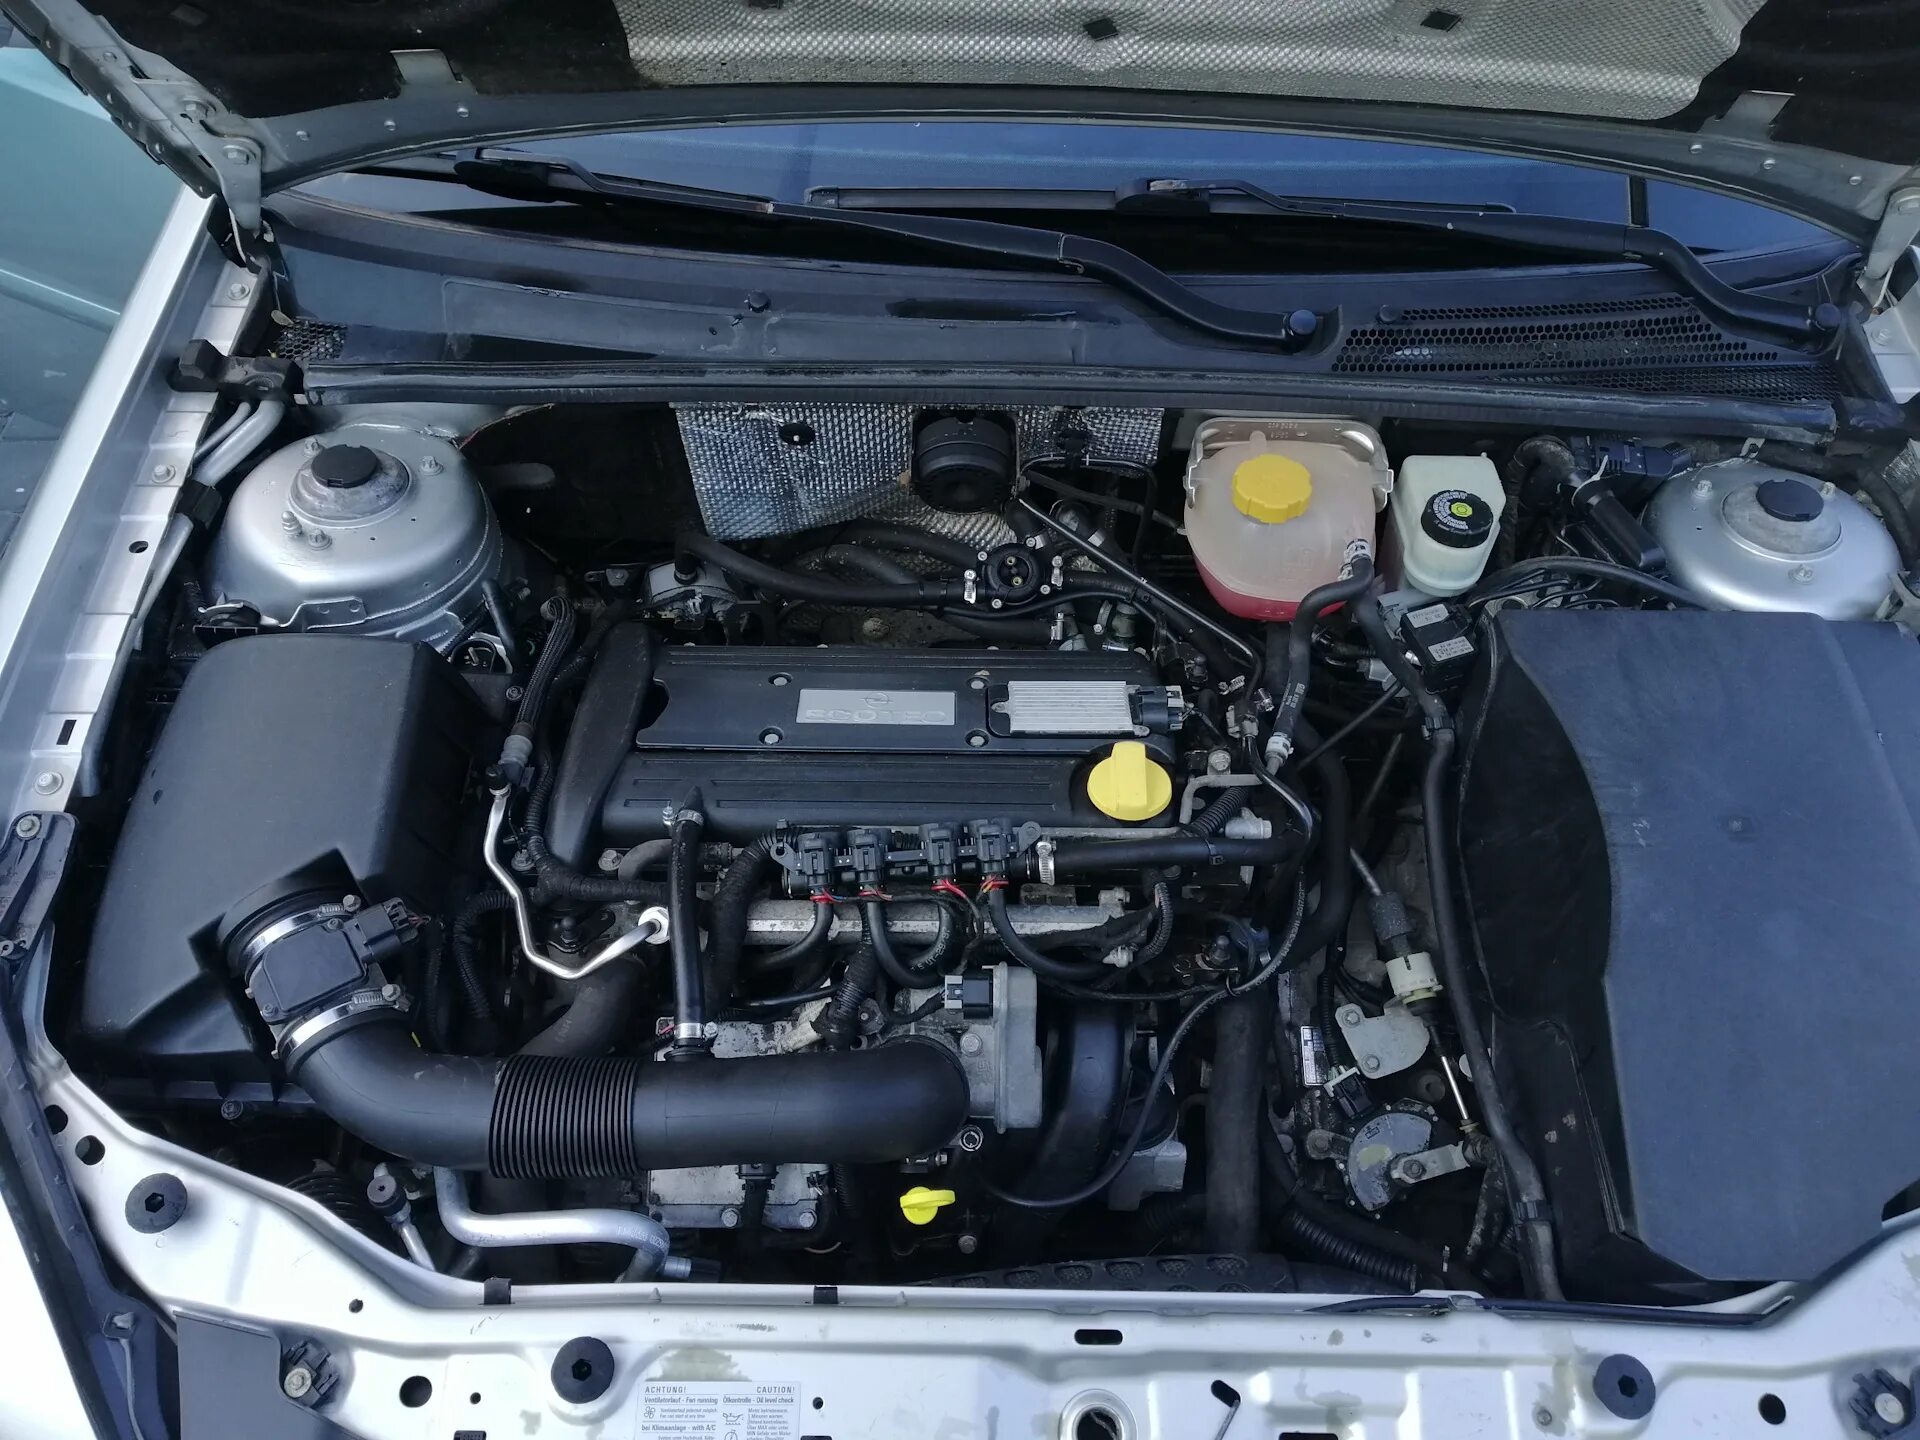 Opel tdi. Вектра с 2,2 подкапотка. Подкапотное пространство Vectra. 2.2 Опель под капотом. Vectra 2.8 подкапотное.